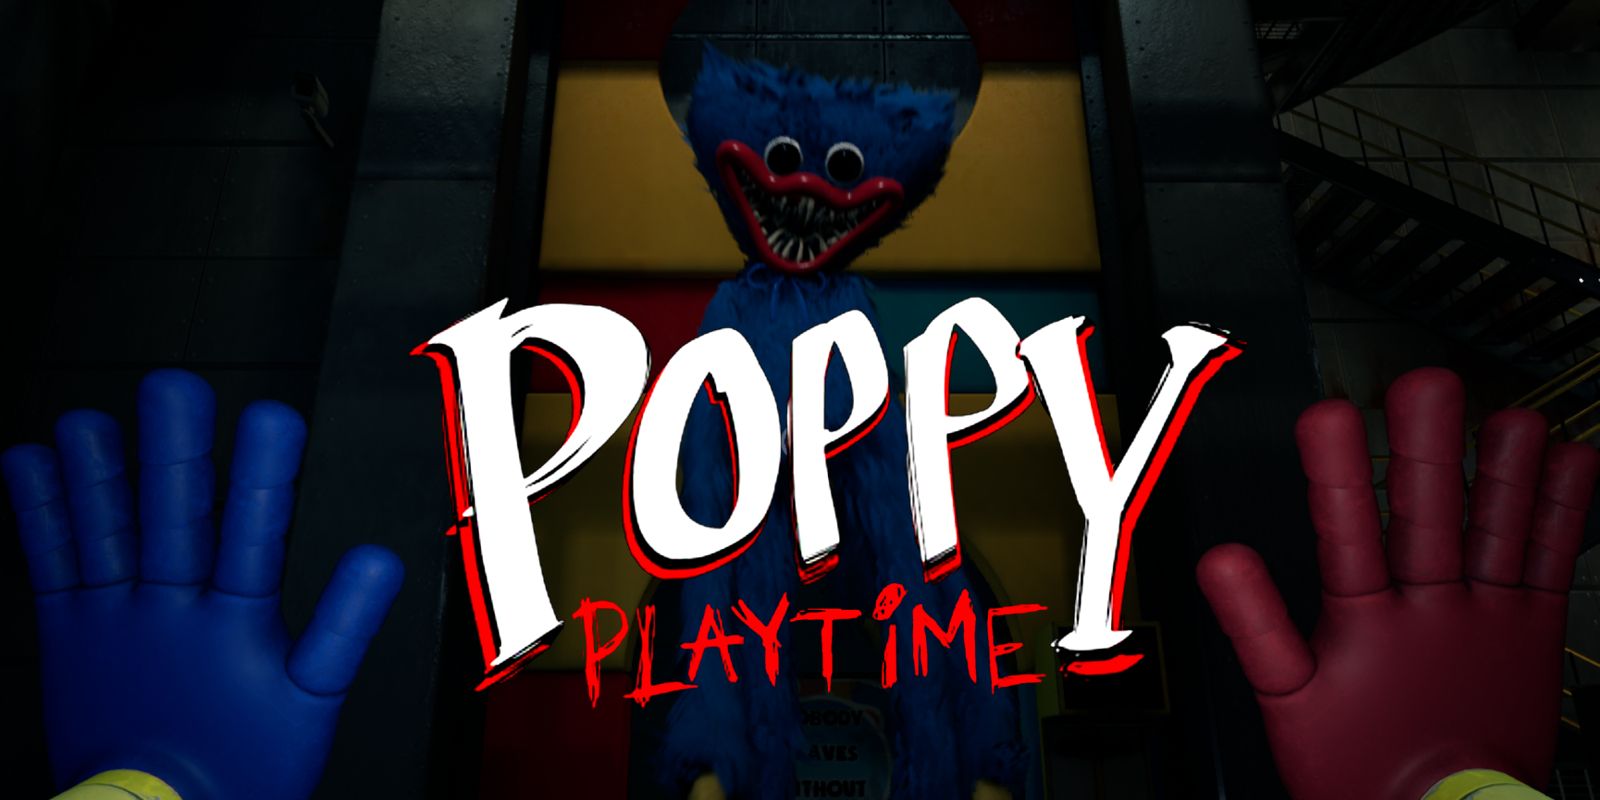 Poppy Playtime Player Trick or Treating My House! #poppyplaytime #grab